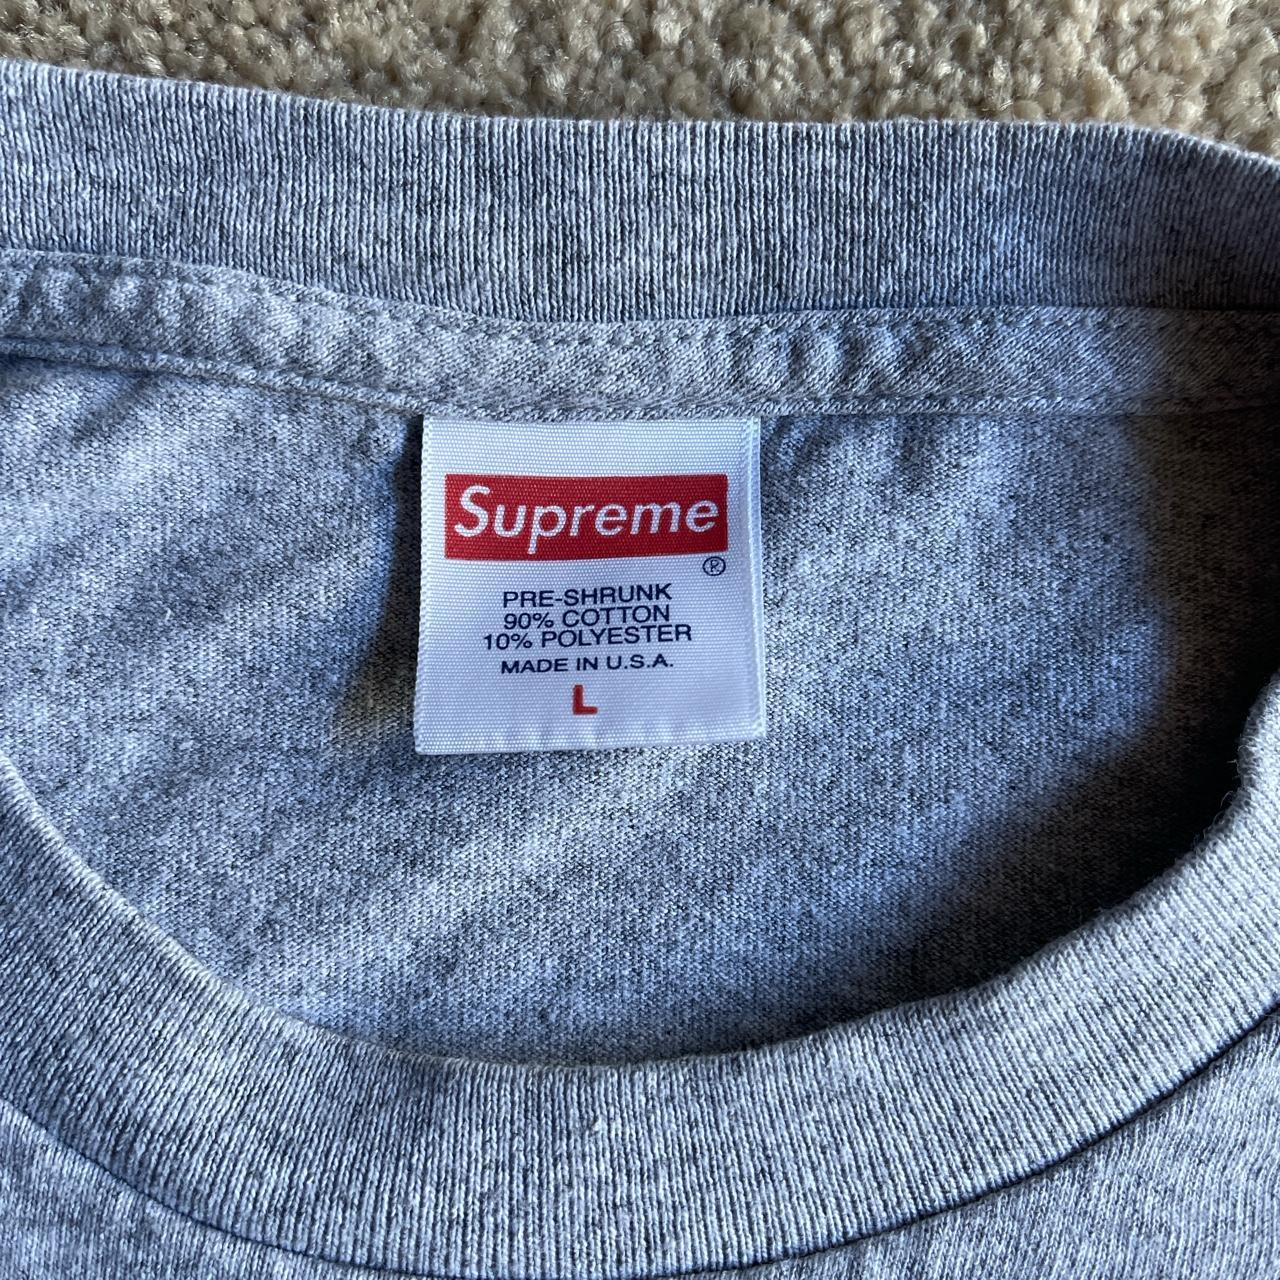 Real Supreme “Sacred, Unique, Psycho” t-shirt - Depop